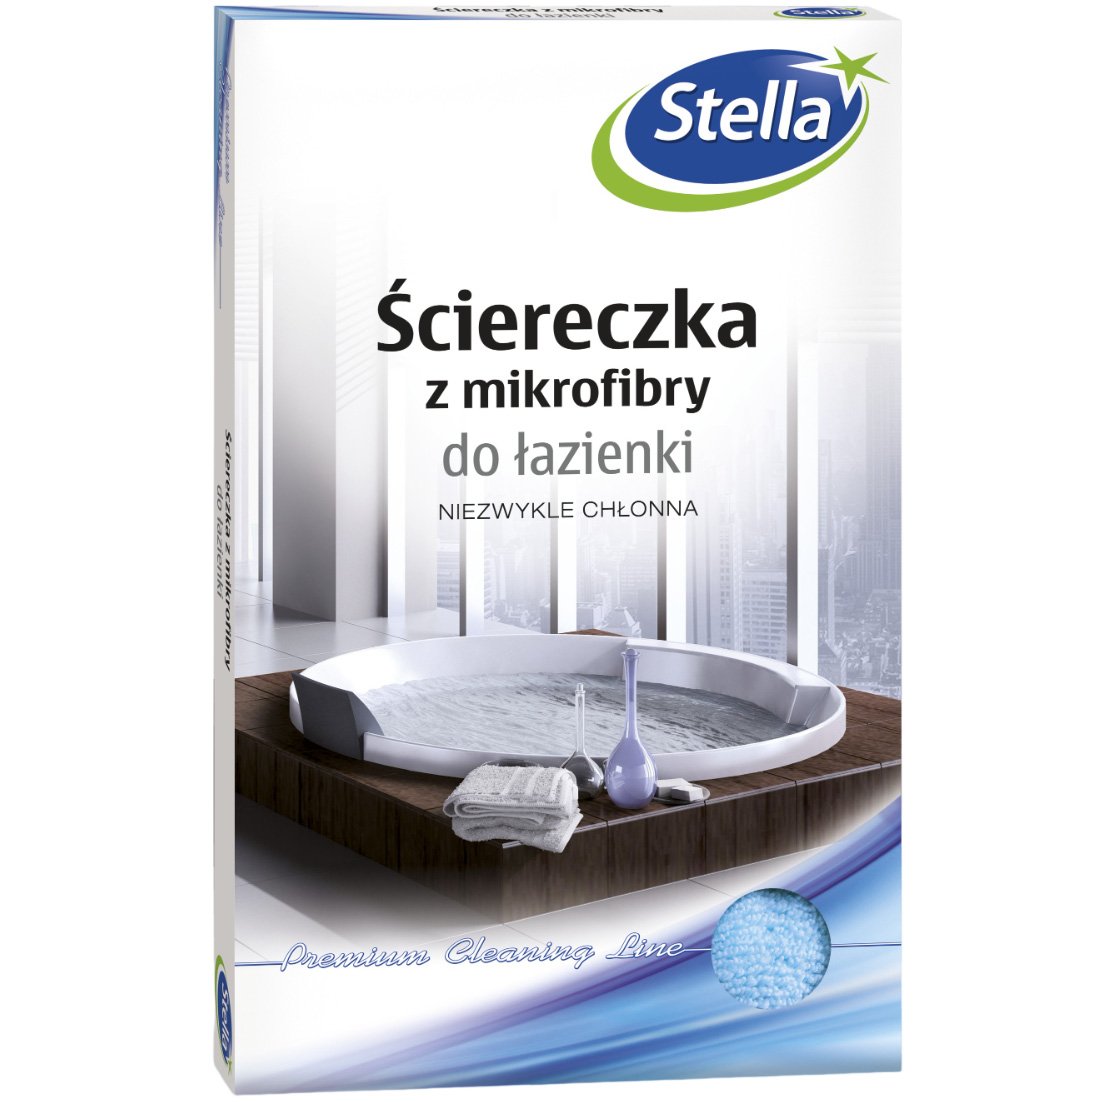 Серветка Stella мікрофібра для ванної кімнати - фото 1